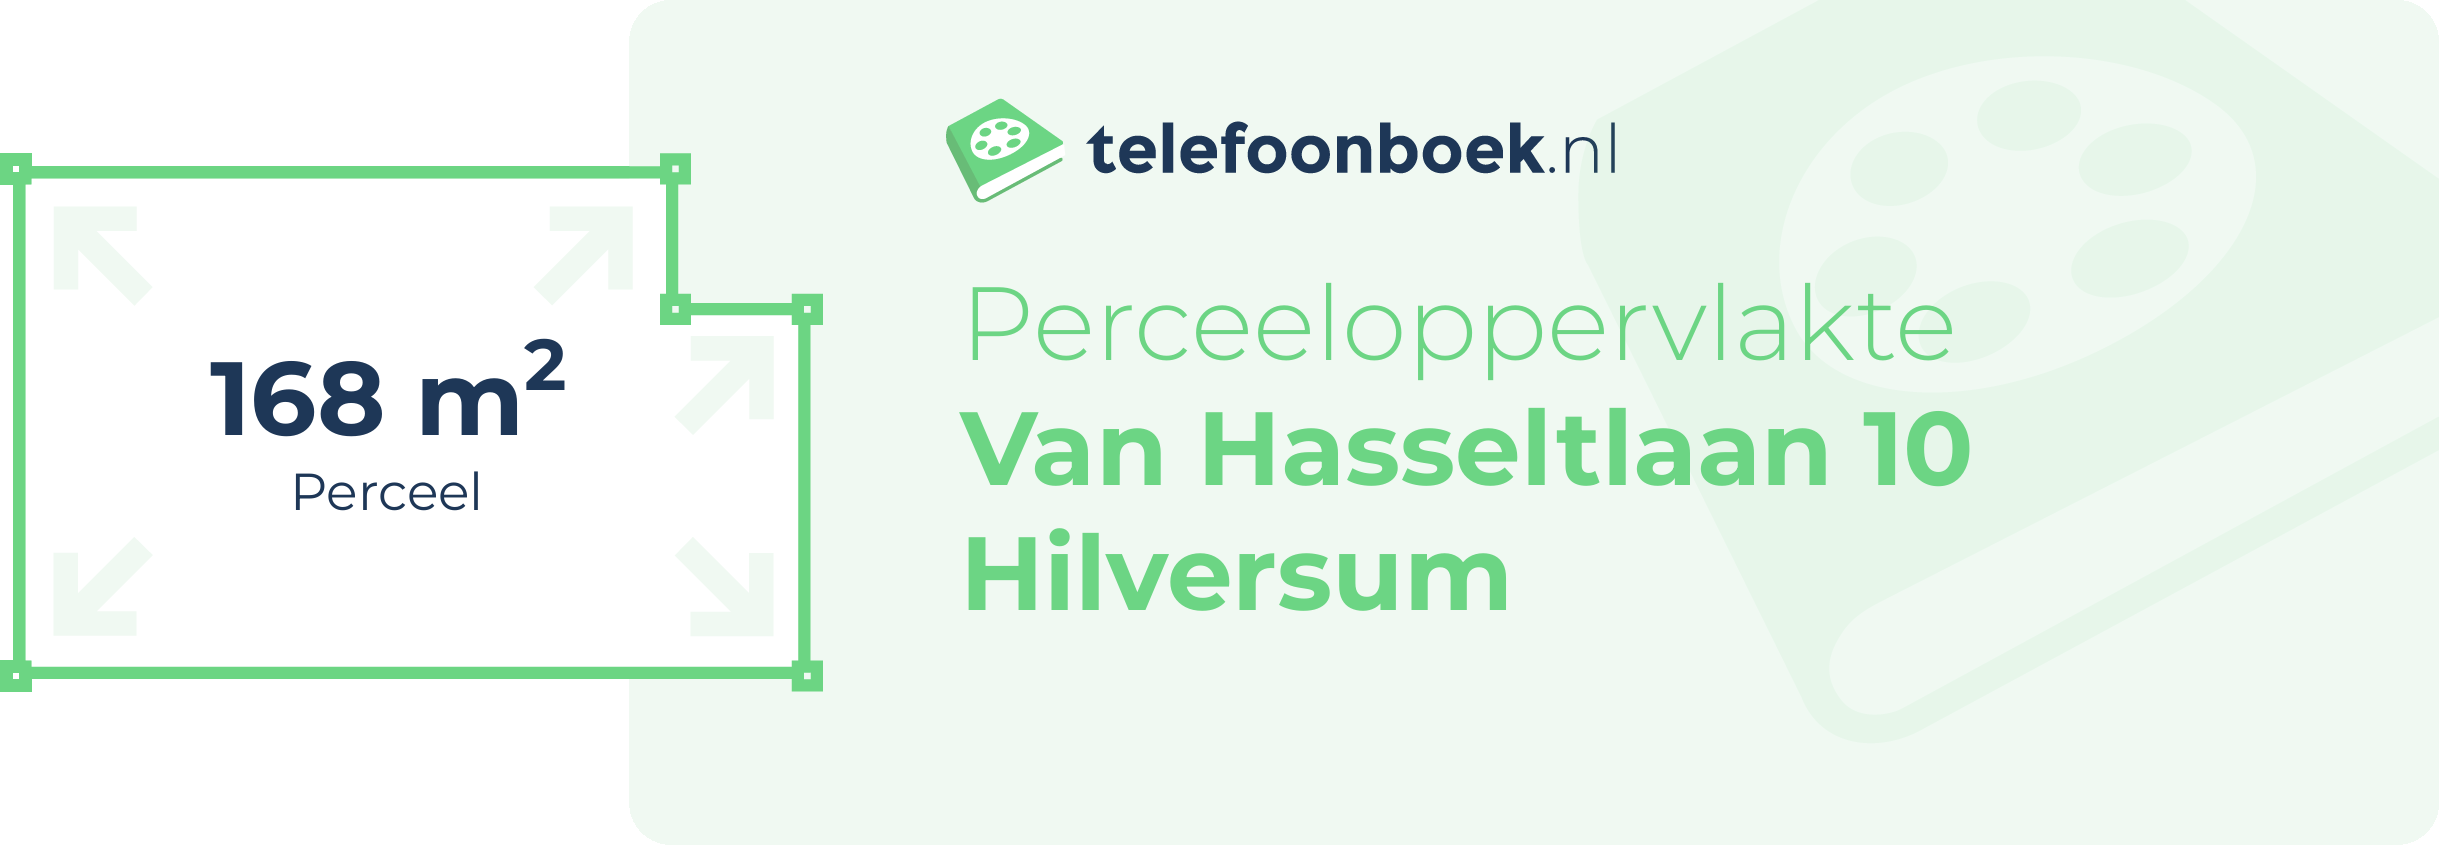 Perceeloppervlakte Van Hasseltlaan 10 Hilversum